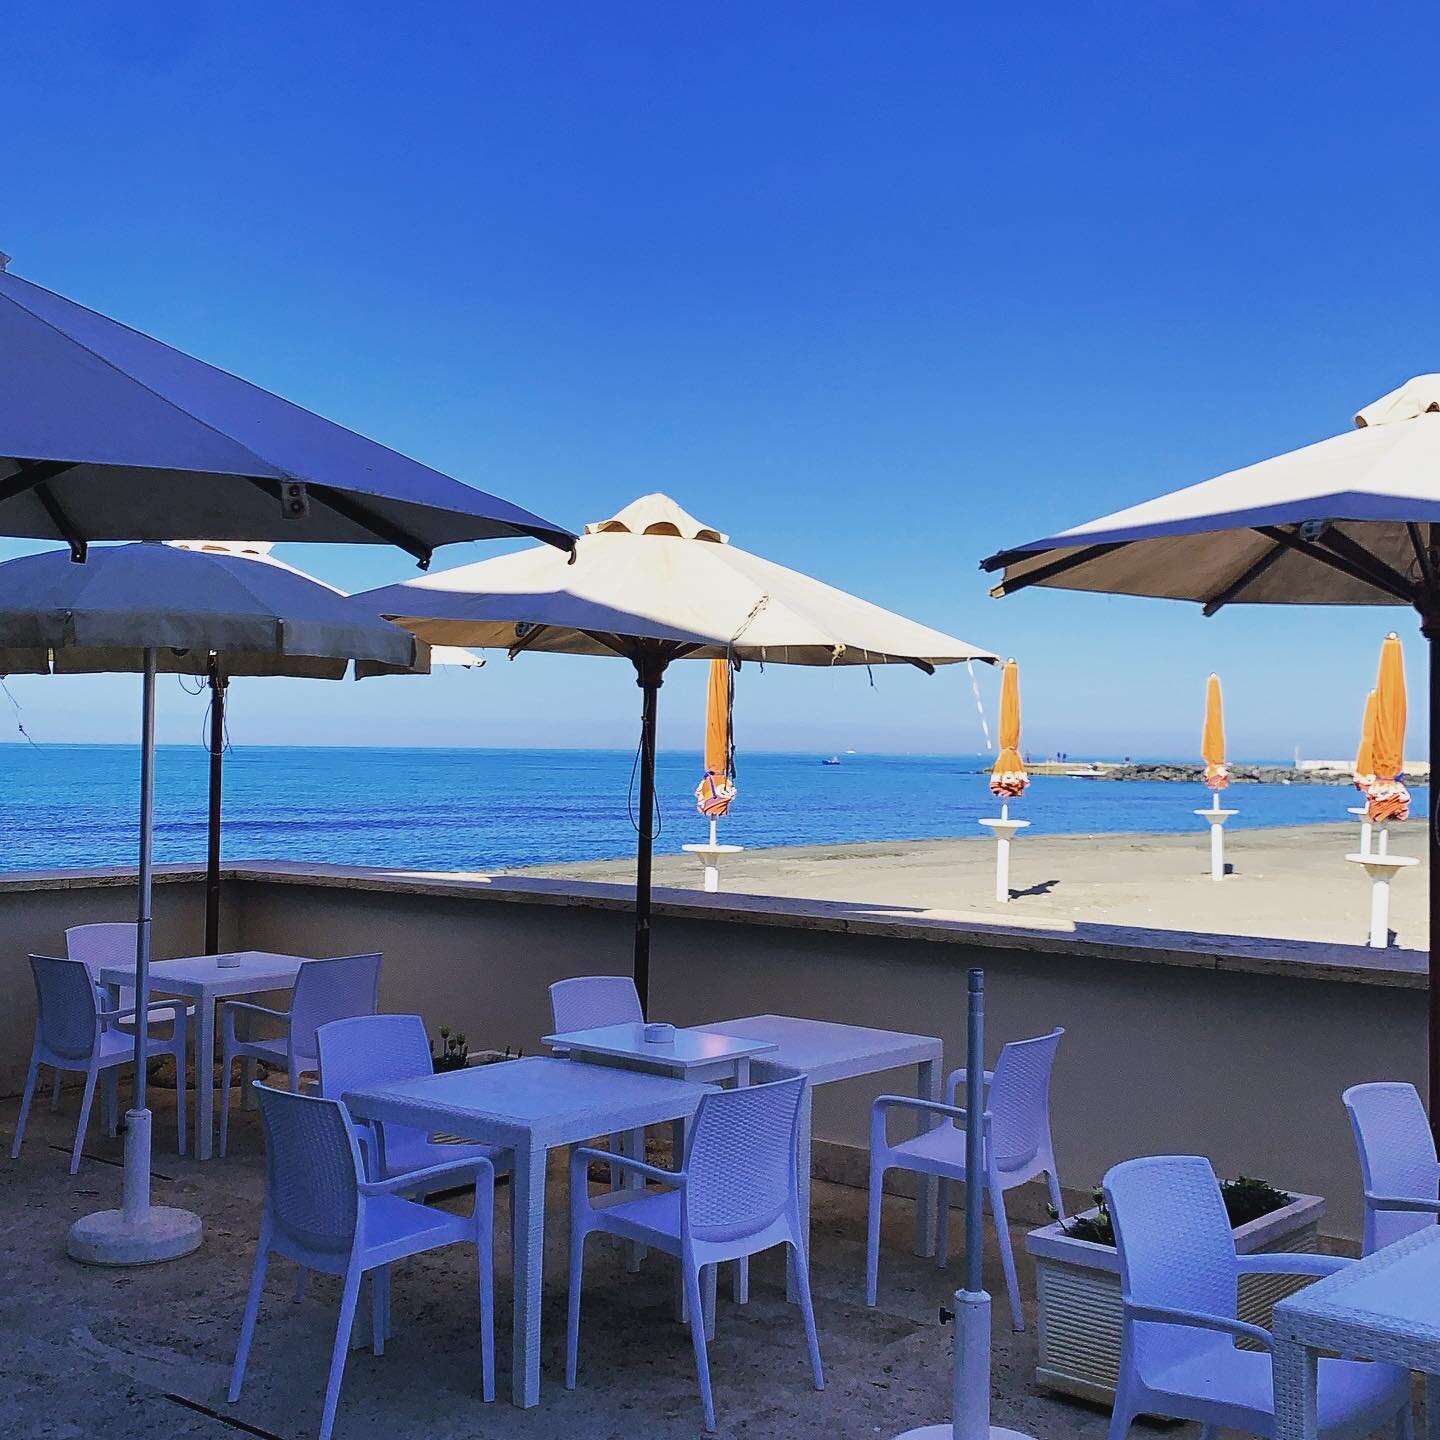 Finalmente una giornata come si deve. #lavecchiapineta #colazionealmare #beachrestaurant #beachbar @la_vecchia_pineta